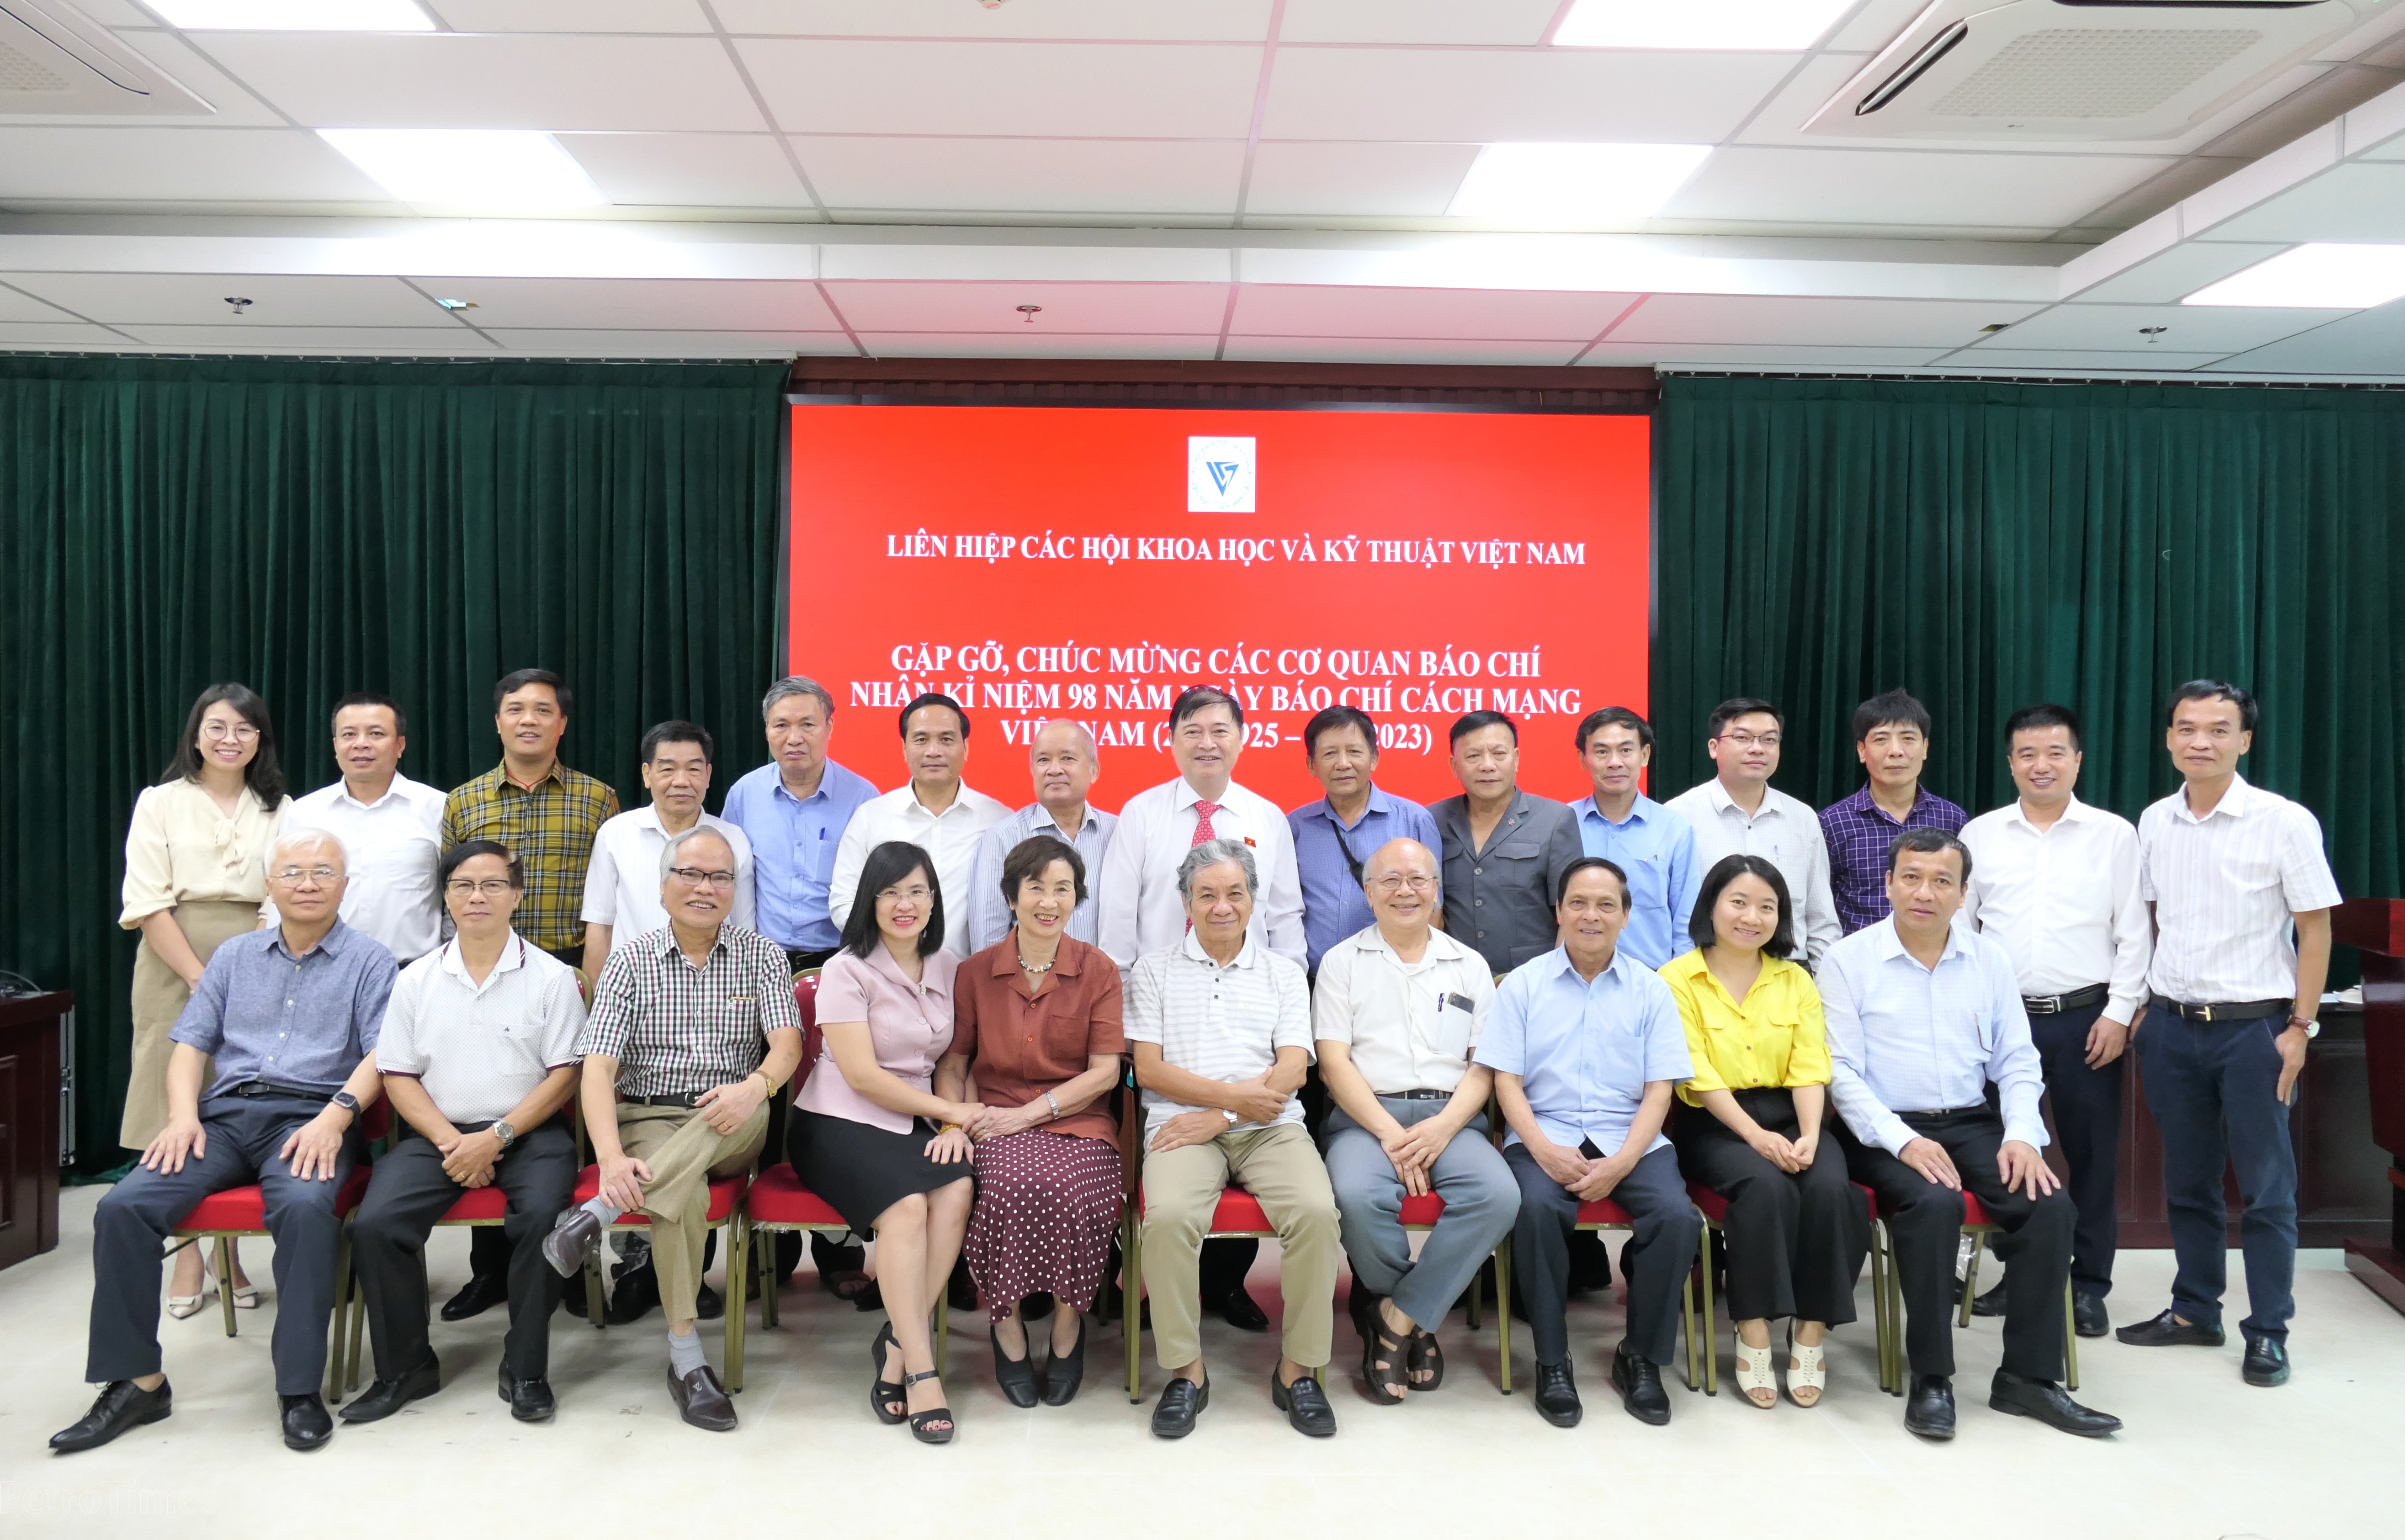 Lãnh đạo Liên hiệp các Hội Khoa học và Kỹ thuật Việt Nam chụp ảnh cùng đại biểu đến từ các cơ quan báo chí, truyền thông